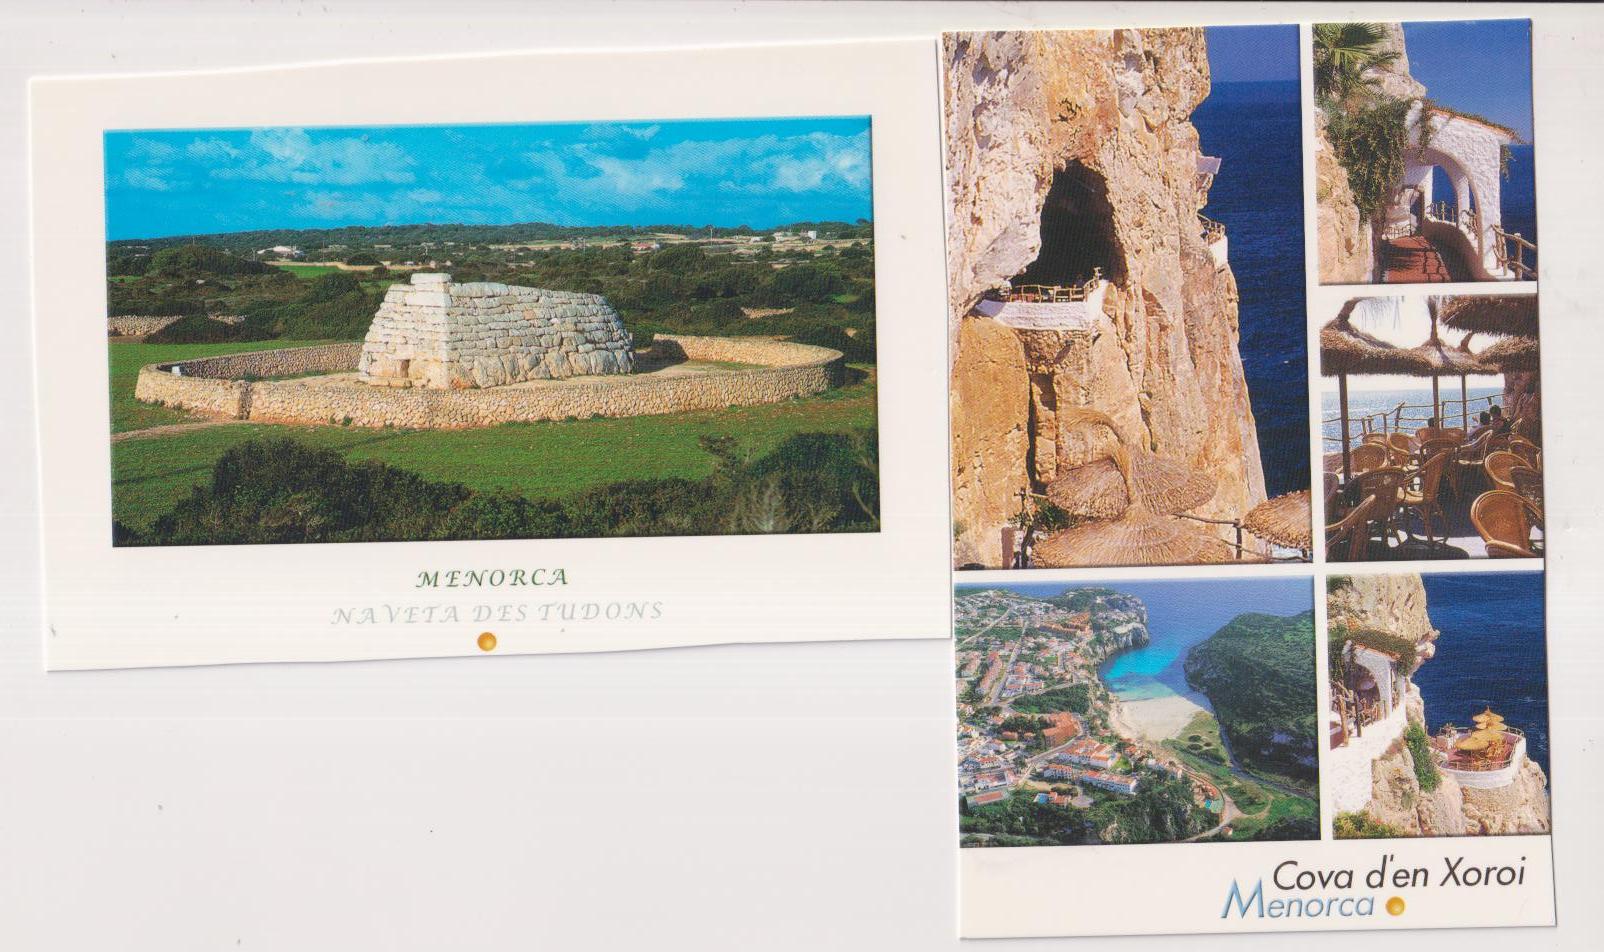 Menorca. 2 Postales: Naveta des Tudons y Cova d´en Xoroi